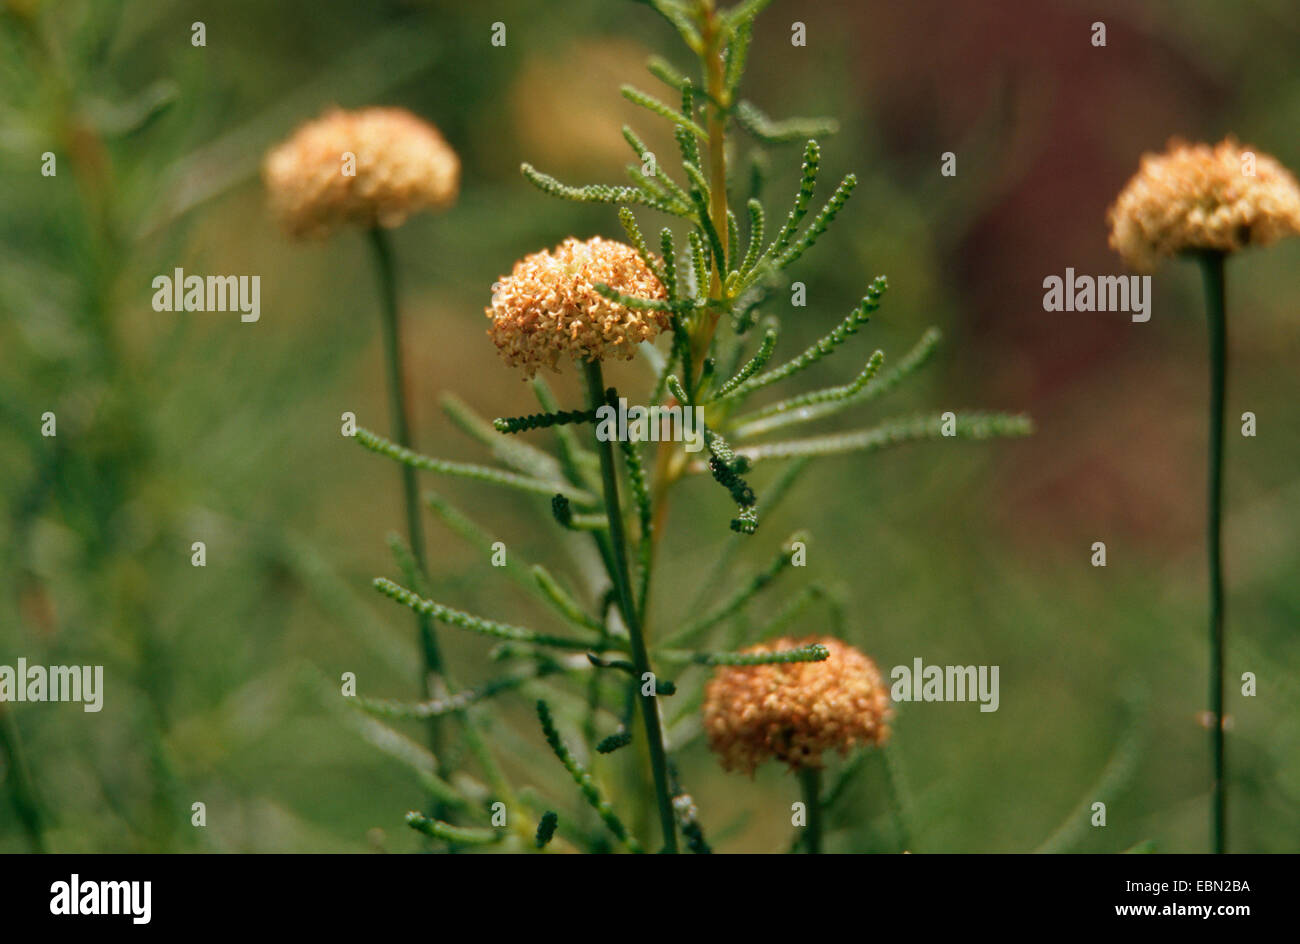 Green santolina (Santolina pinnata), blooming Stock Photo